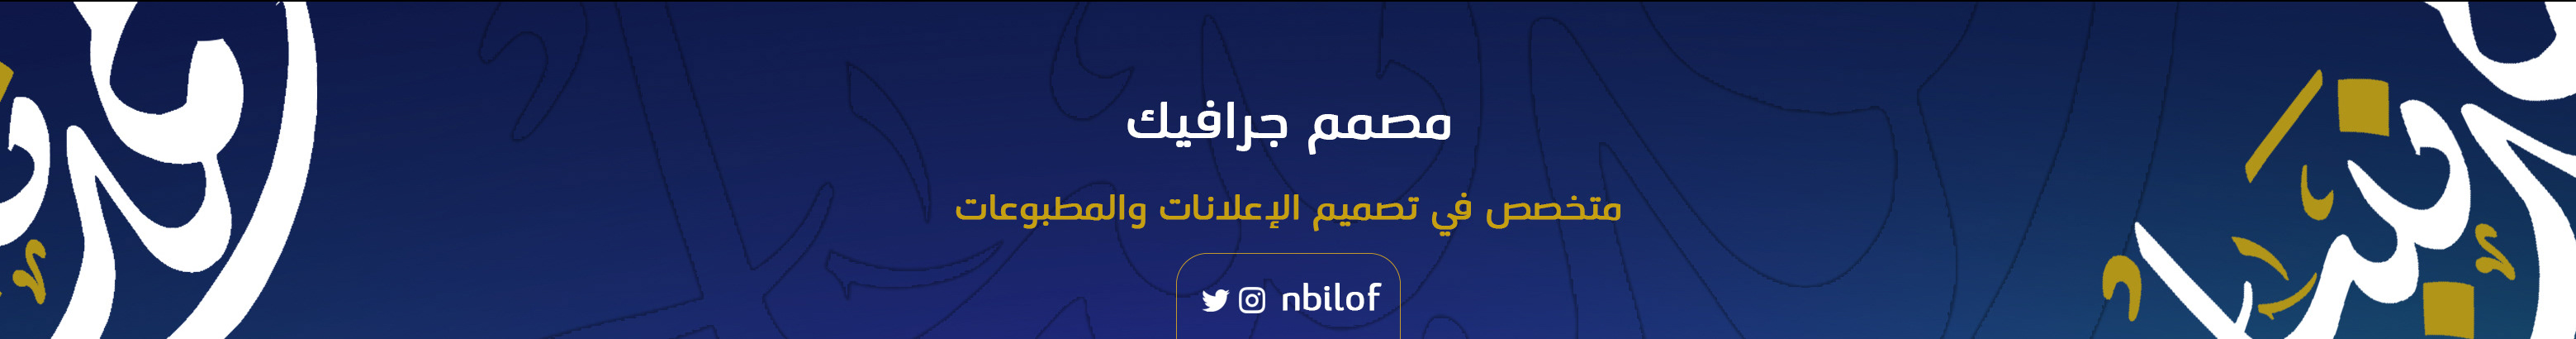 Banner de perfil de Ahmed Nabil